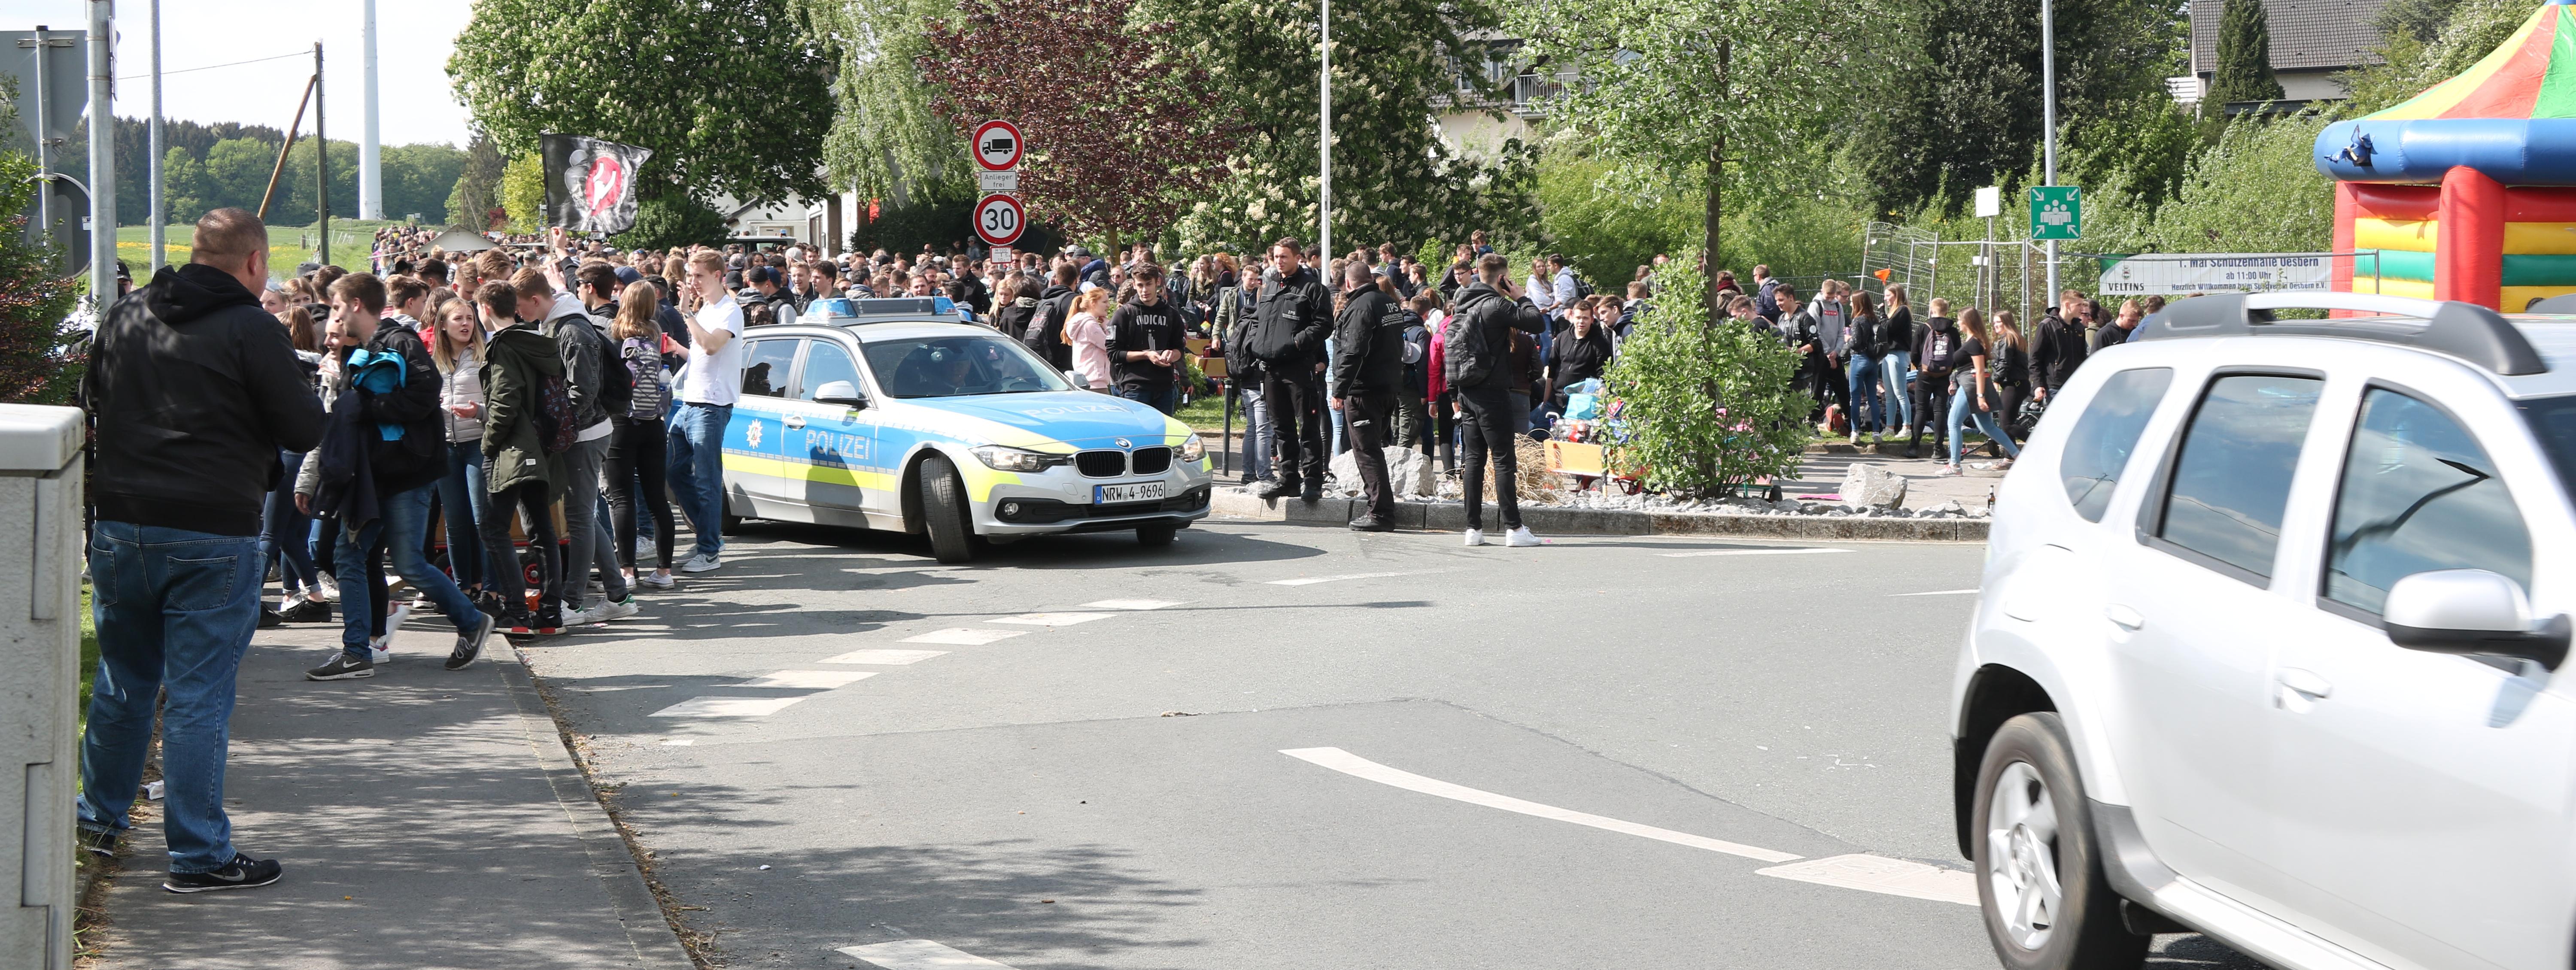 hunderte Jugendliche habe sich am Kreisverkehr in Oesbern versammelt und feiern den ersten Mai. In Mitten der Gruppe steht ein Polizeiauto.